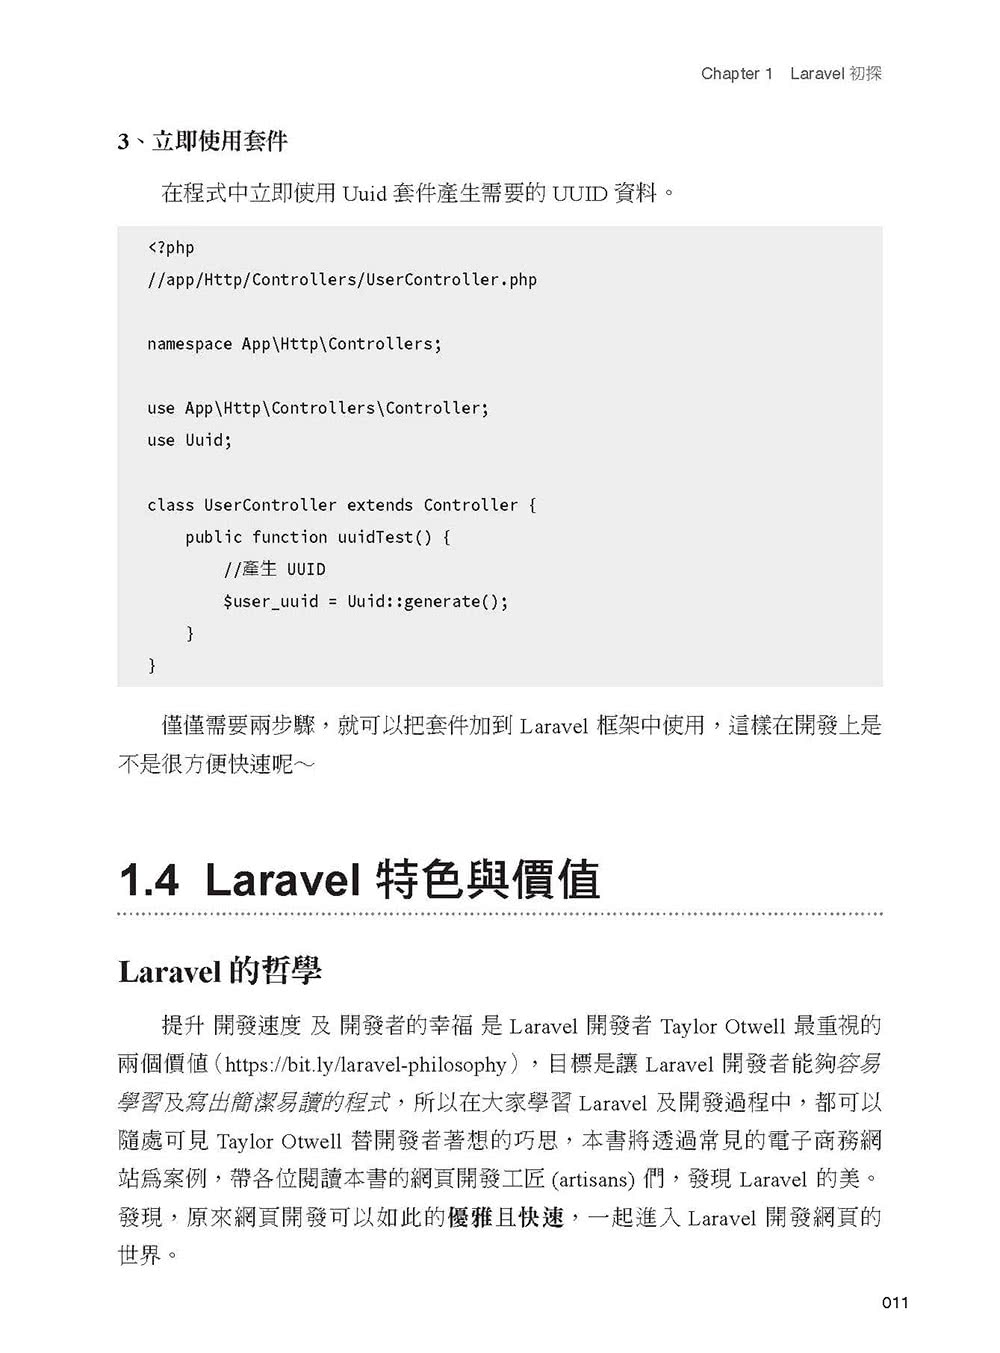 Laravel 5 for beginner 新手道場：優雅運用框架快速開發 PHP 網站